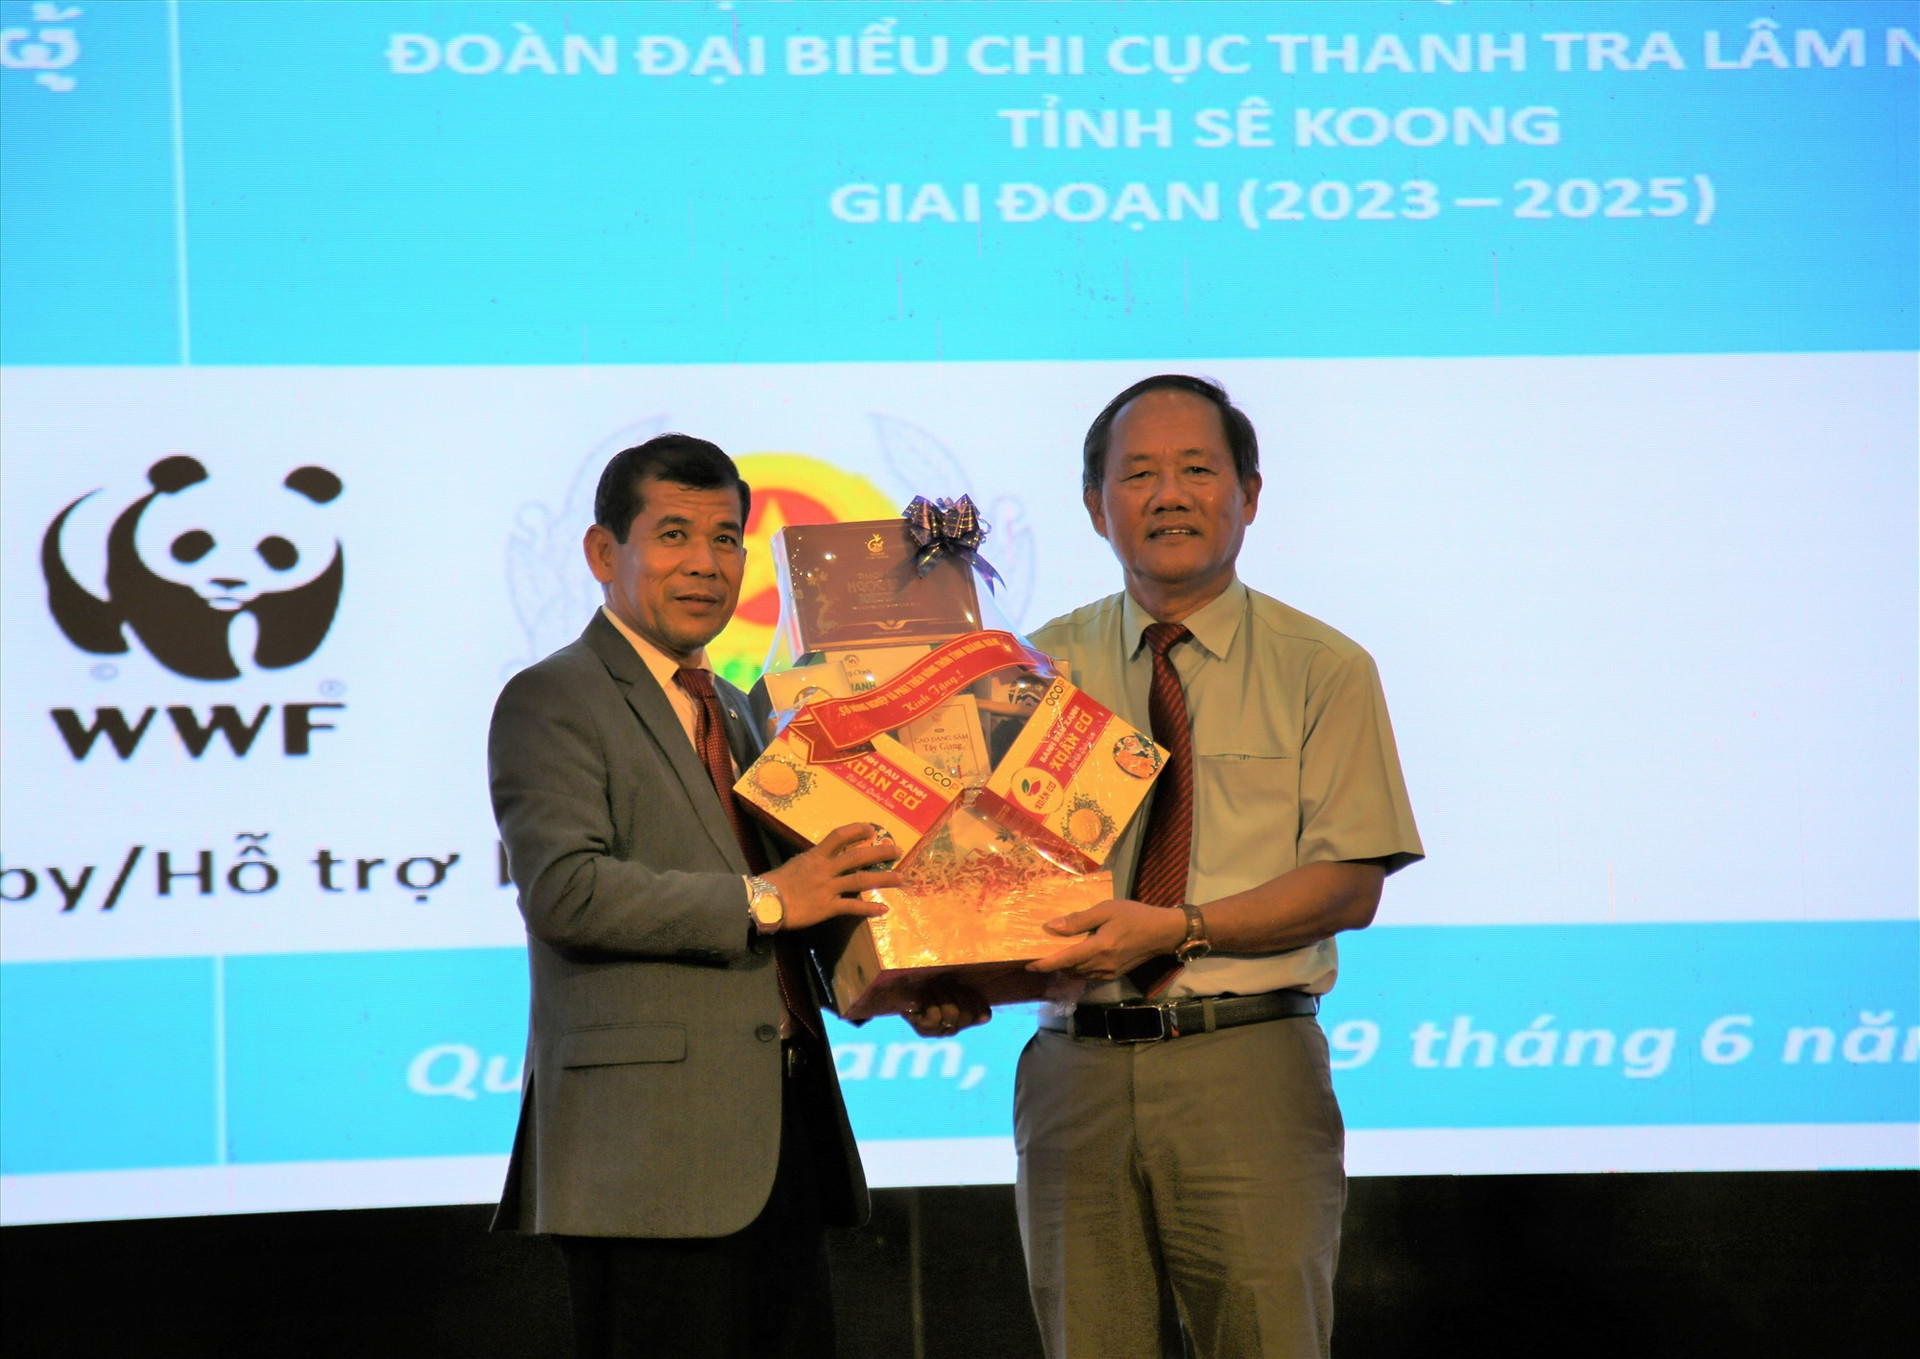 Đại diện Sở NN&PTNT Quảng Nam (bên phải) tặng quà cho đại diện lãnh đạo Sở Nông - lâm nghiệp Sê Kông. Ảnh: A.N